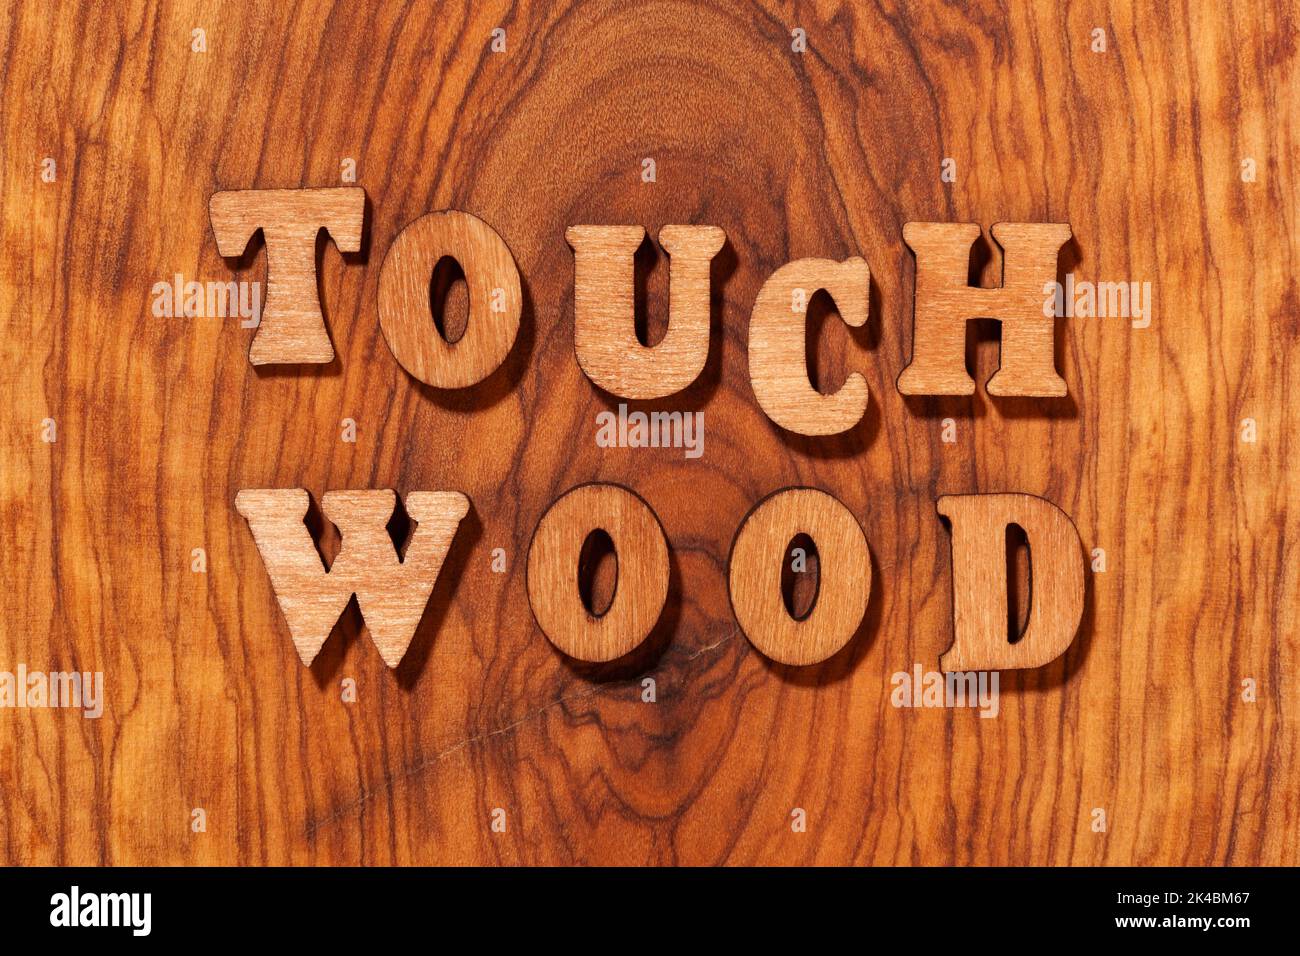 Toccare frase legno con lettere di legno in primo piano Foto Stock